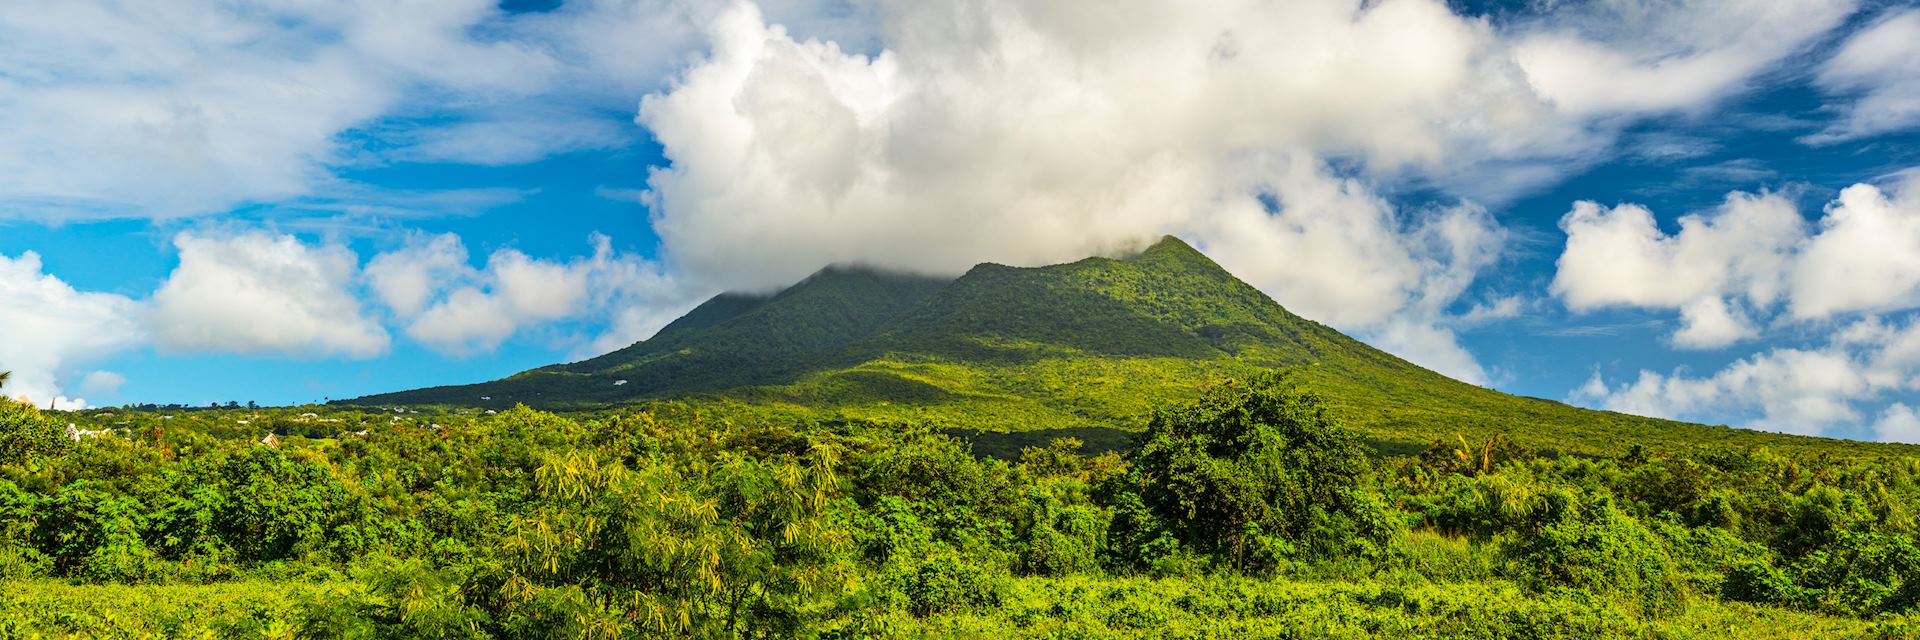 Nevis Peak, Saint Kitts and Nevis